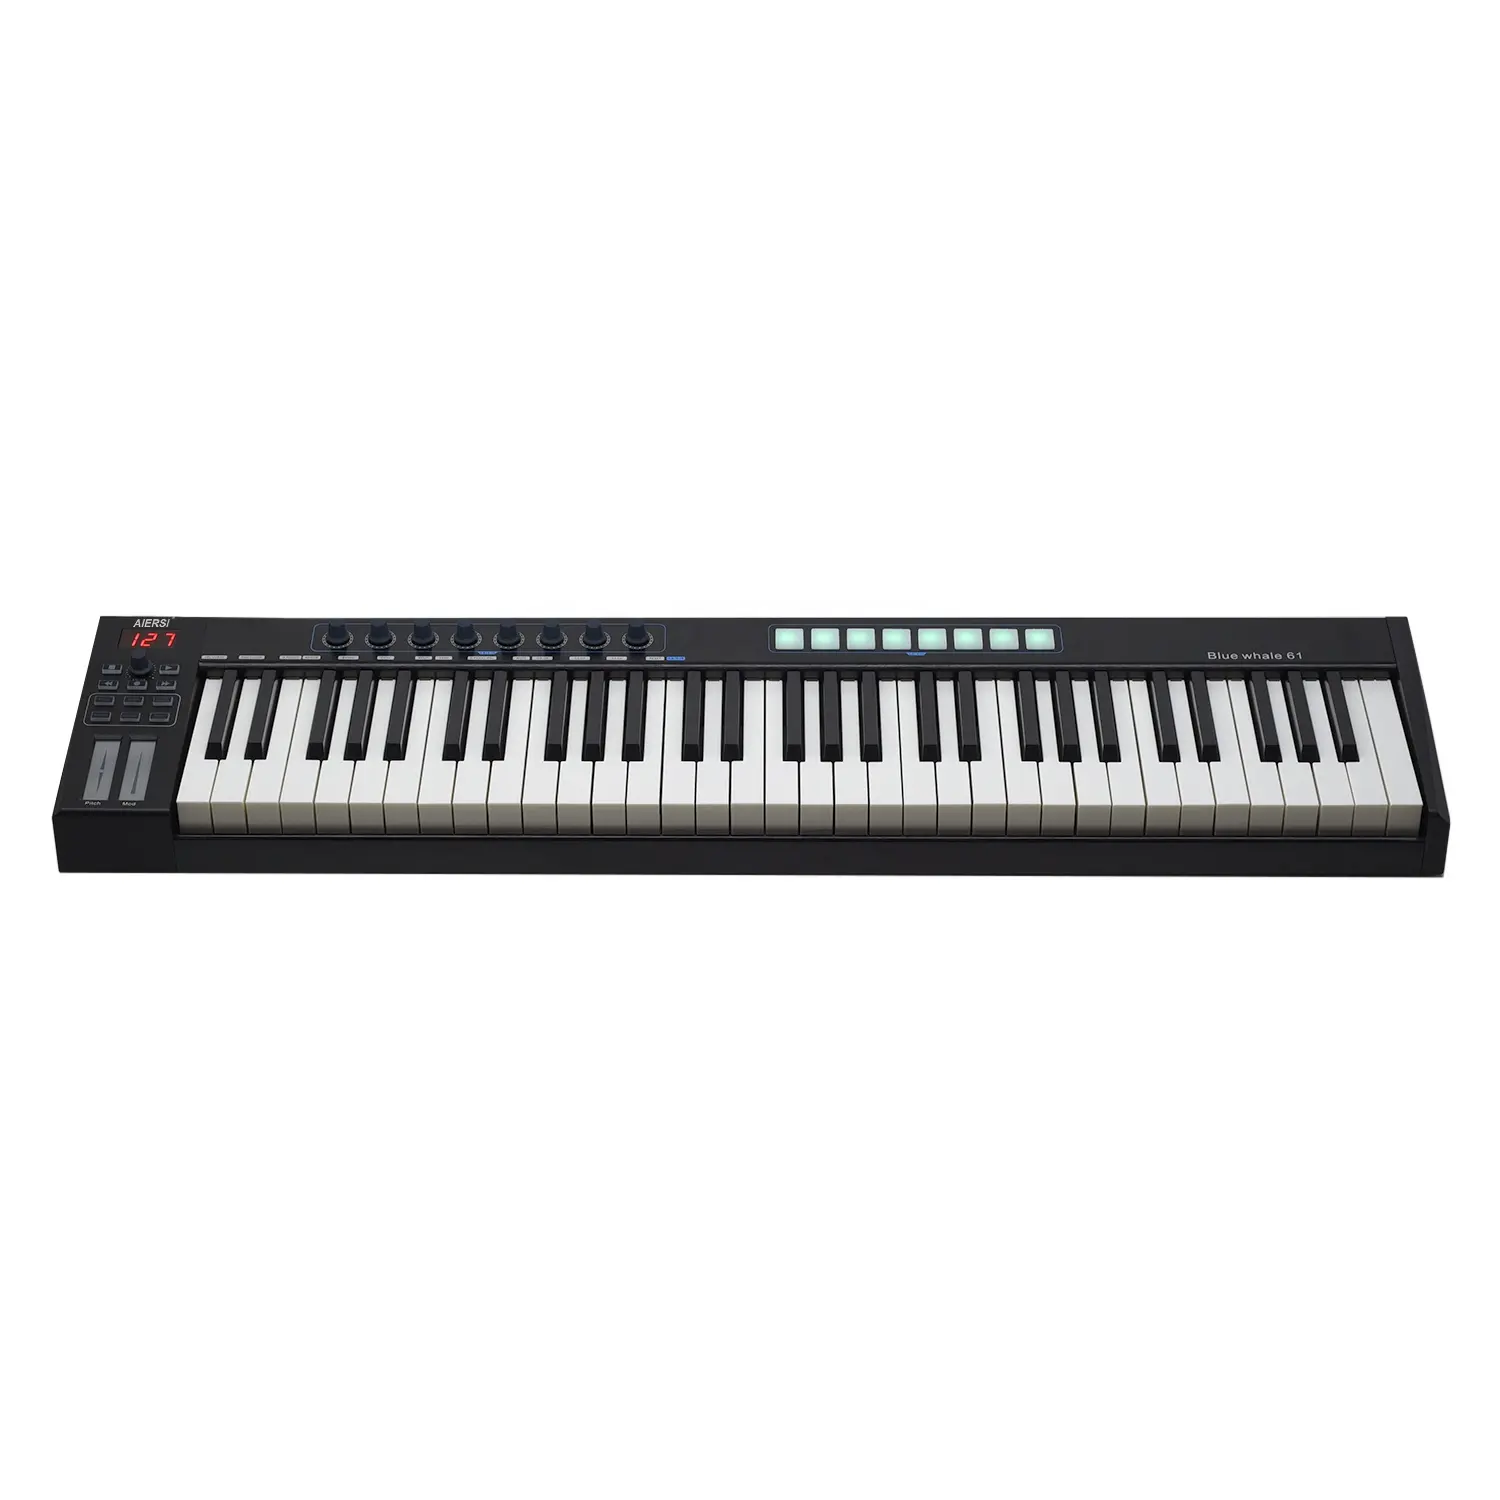 ألعاب موسيقية ماركة Aiersi, ألعاب موسيقية ماركة Aiersi لوحة مفاتيح موسيقية أخرى أزرار تحكم بيانو midi 61 مفتاح شبه ثقالة مع منفذ USB